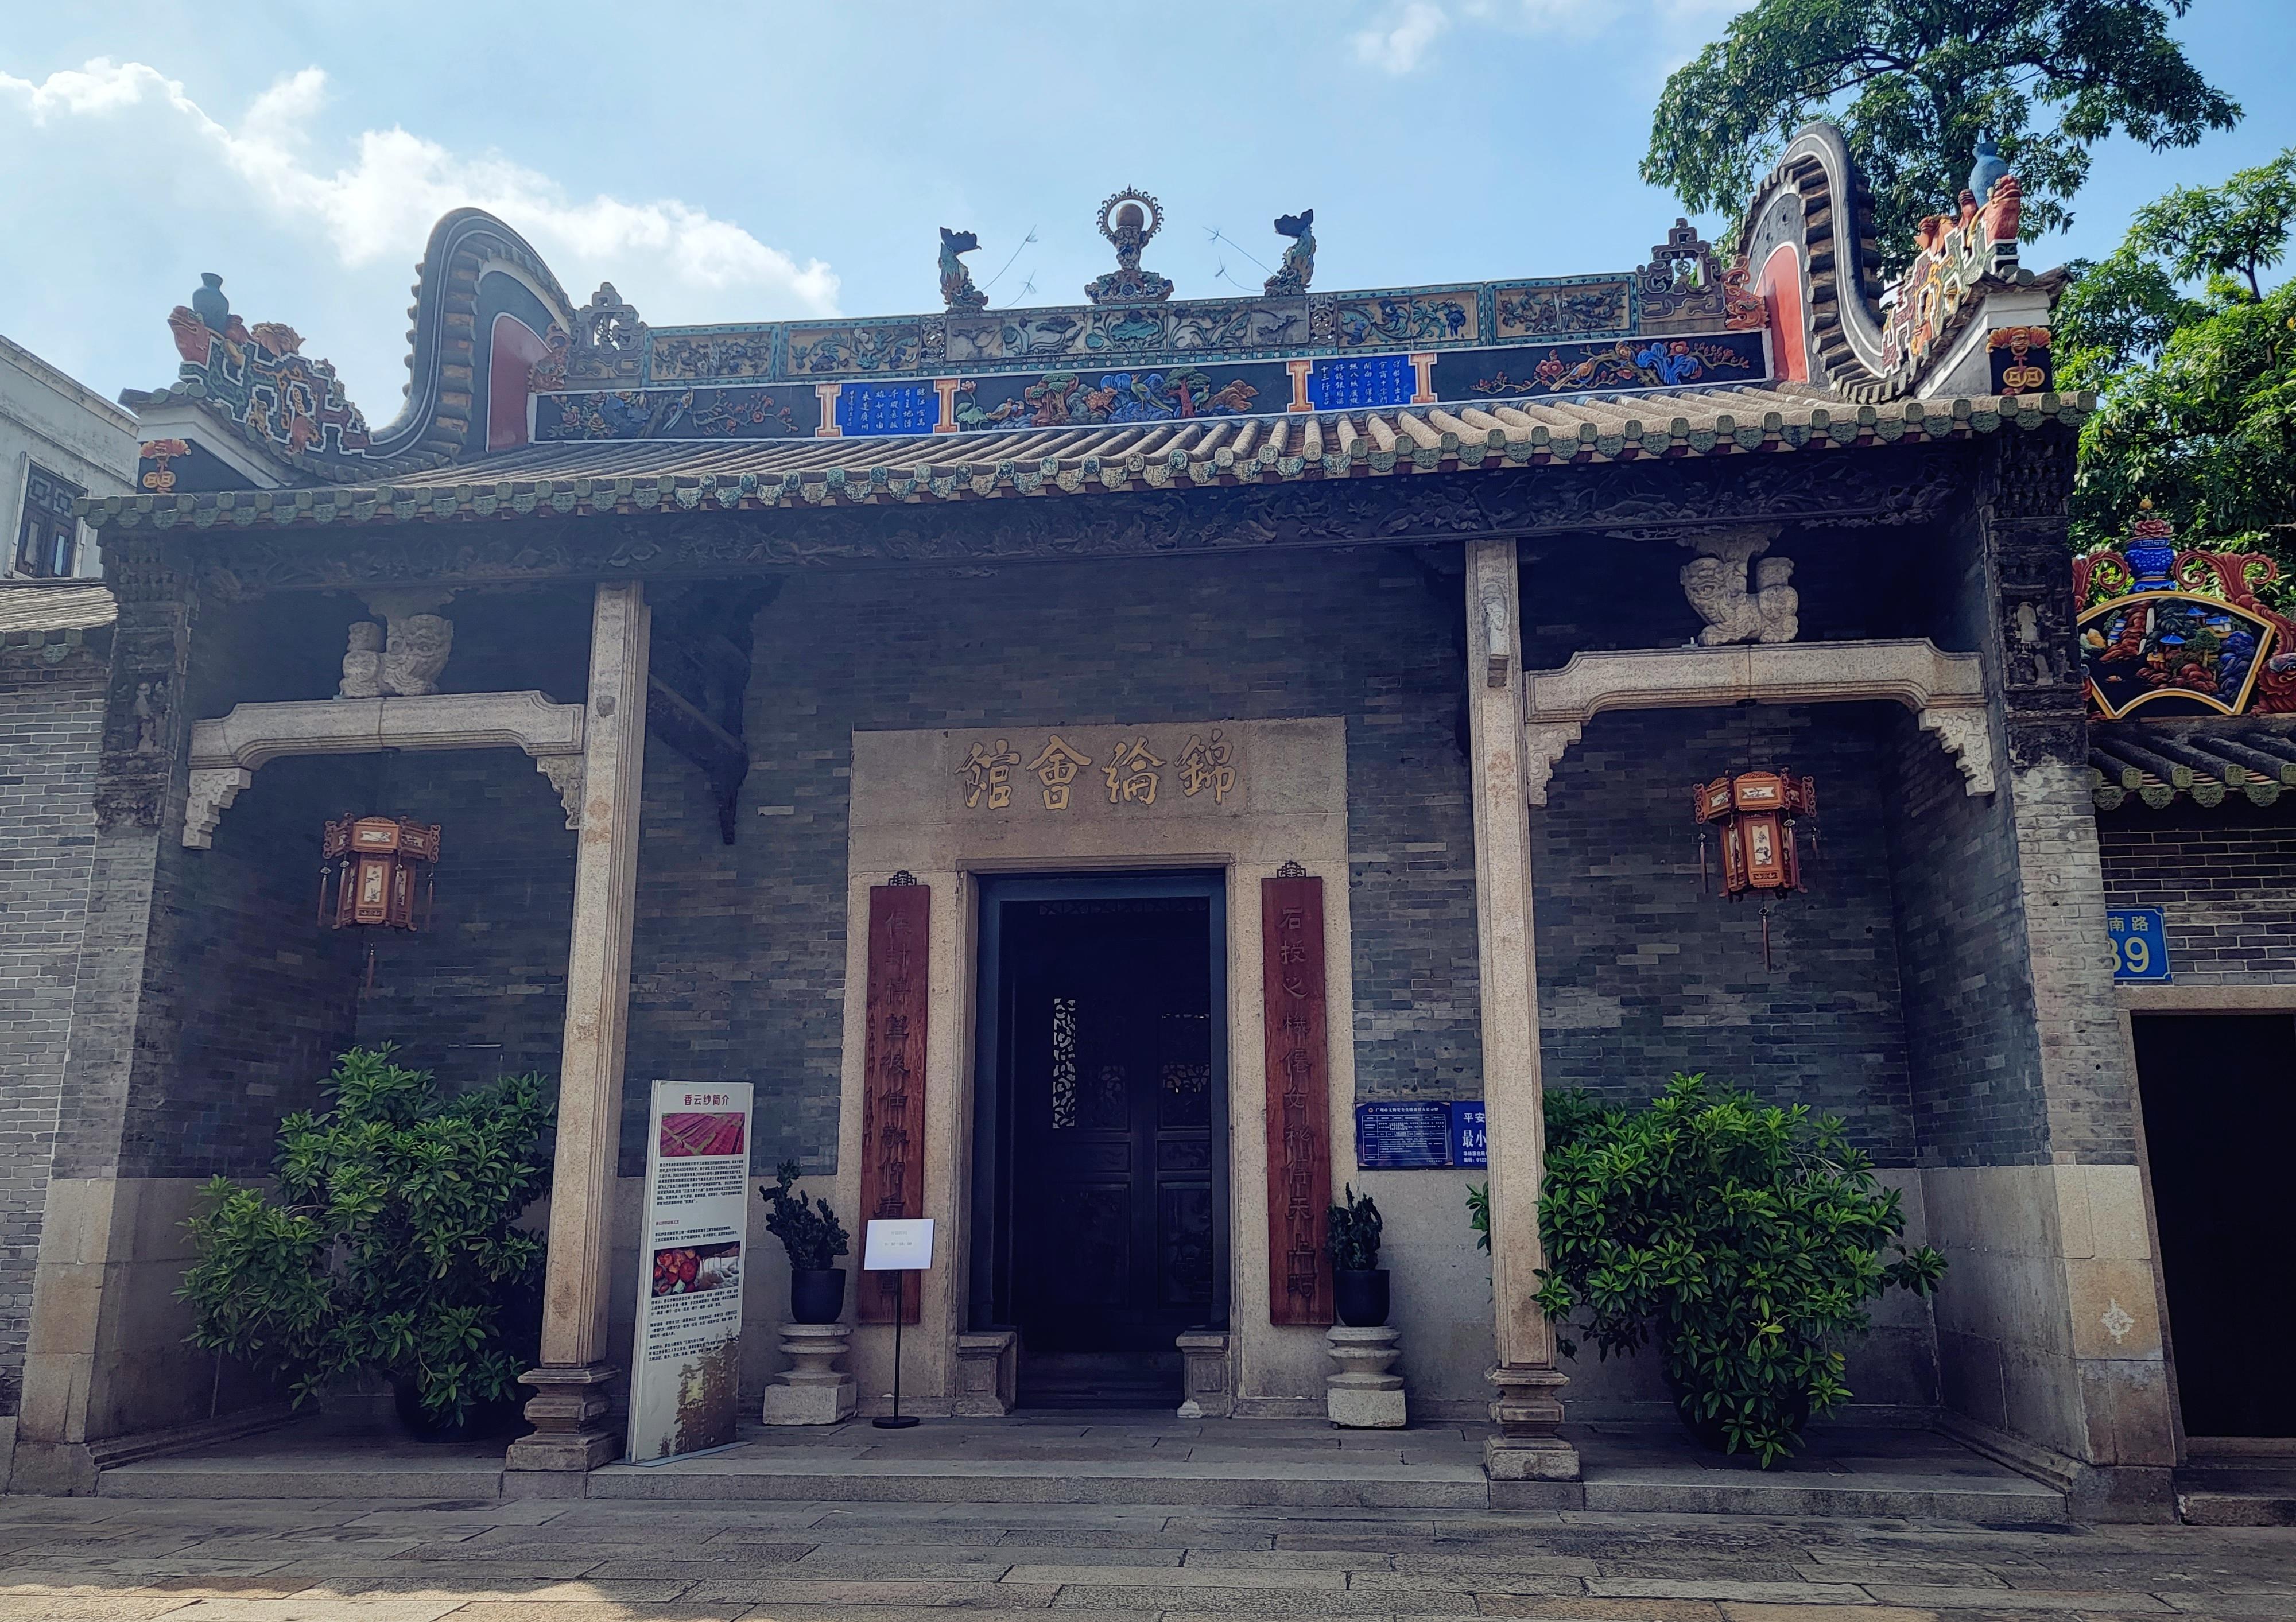 锦纶会馆作为广州目前唯一保存的行业会馆，已成为广州海上丝绸之路的重要物证之一。宁玉瑛摄